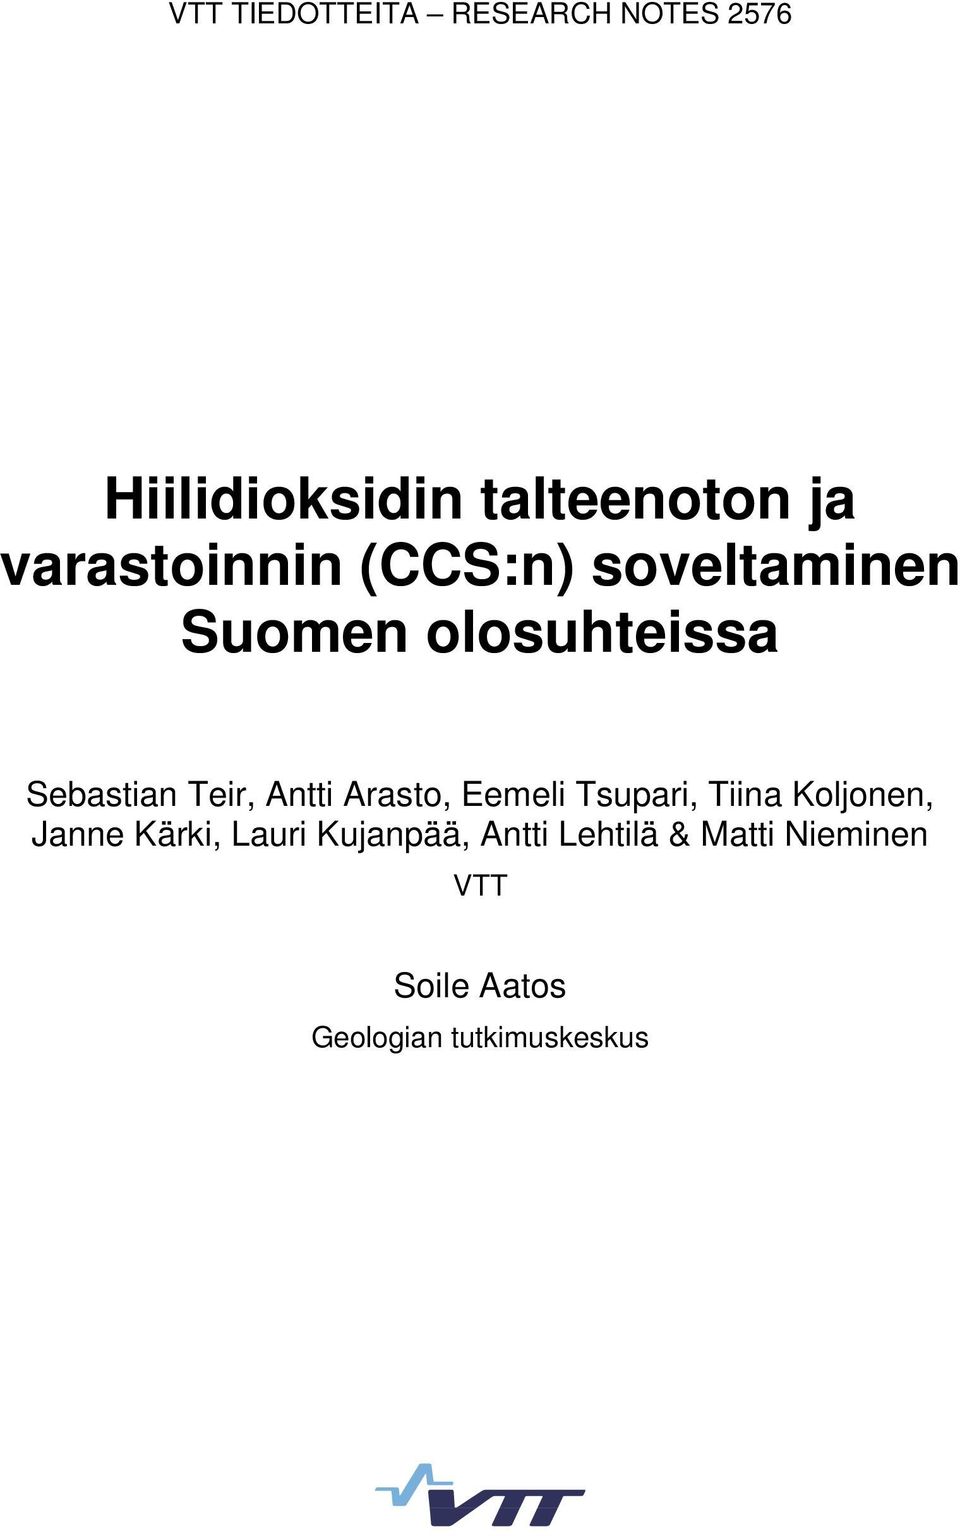 Antti Arasto, Eemeli Tsupari, Tiina Koljonen, Janne Kärki, Lauri